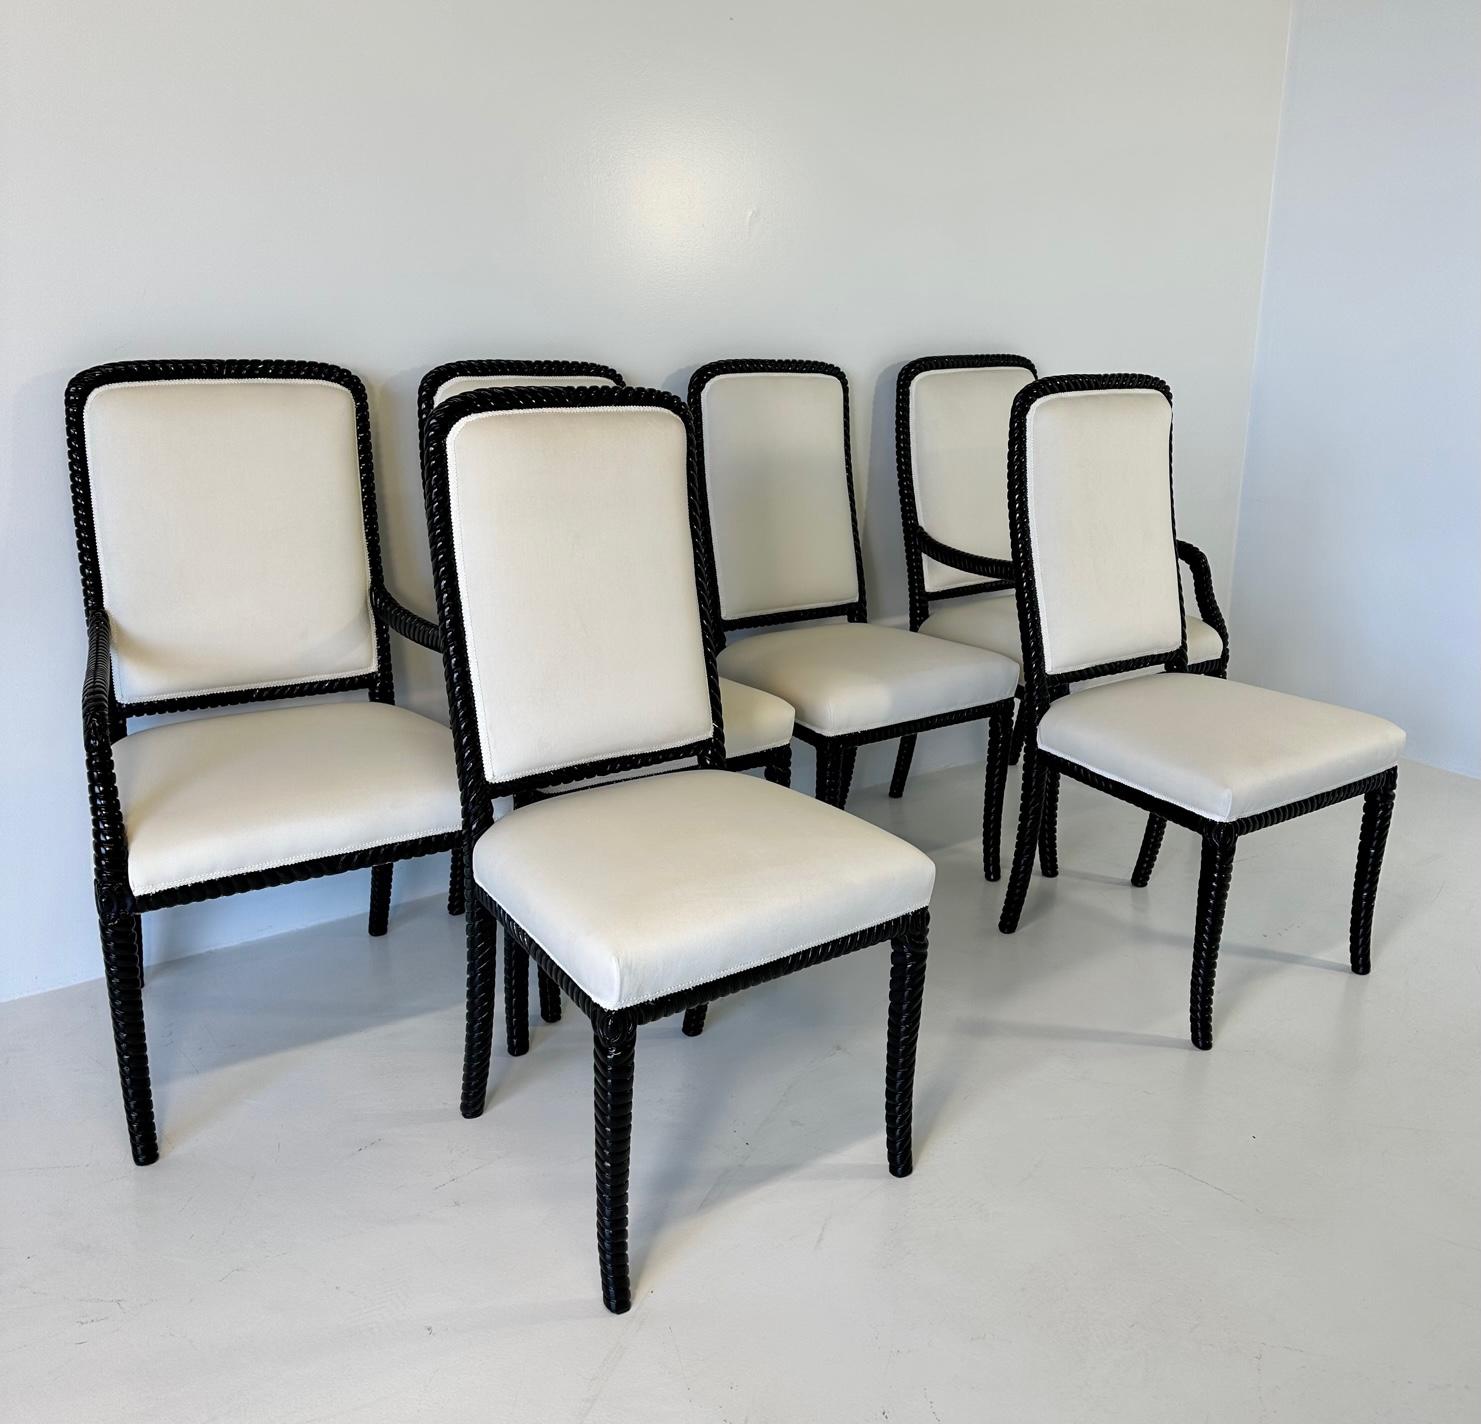 Cet ensemble de six chaises de style Art déco a été produit en Italie. 
L'ensemble est composé de 4 chaises et de 2 chaises capitales avec bras. 
Les six sont recouverts d'un fin velours crème et la structure est en bois laqué noir. 
Chaises : 52 cm